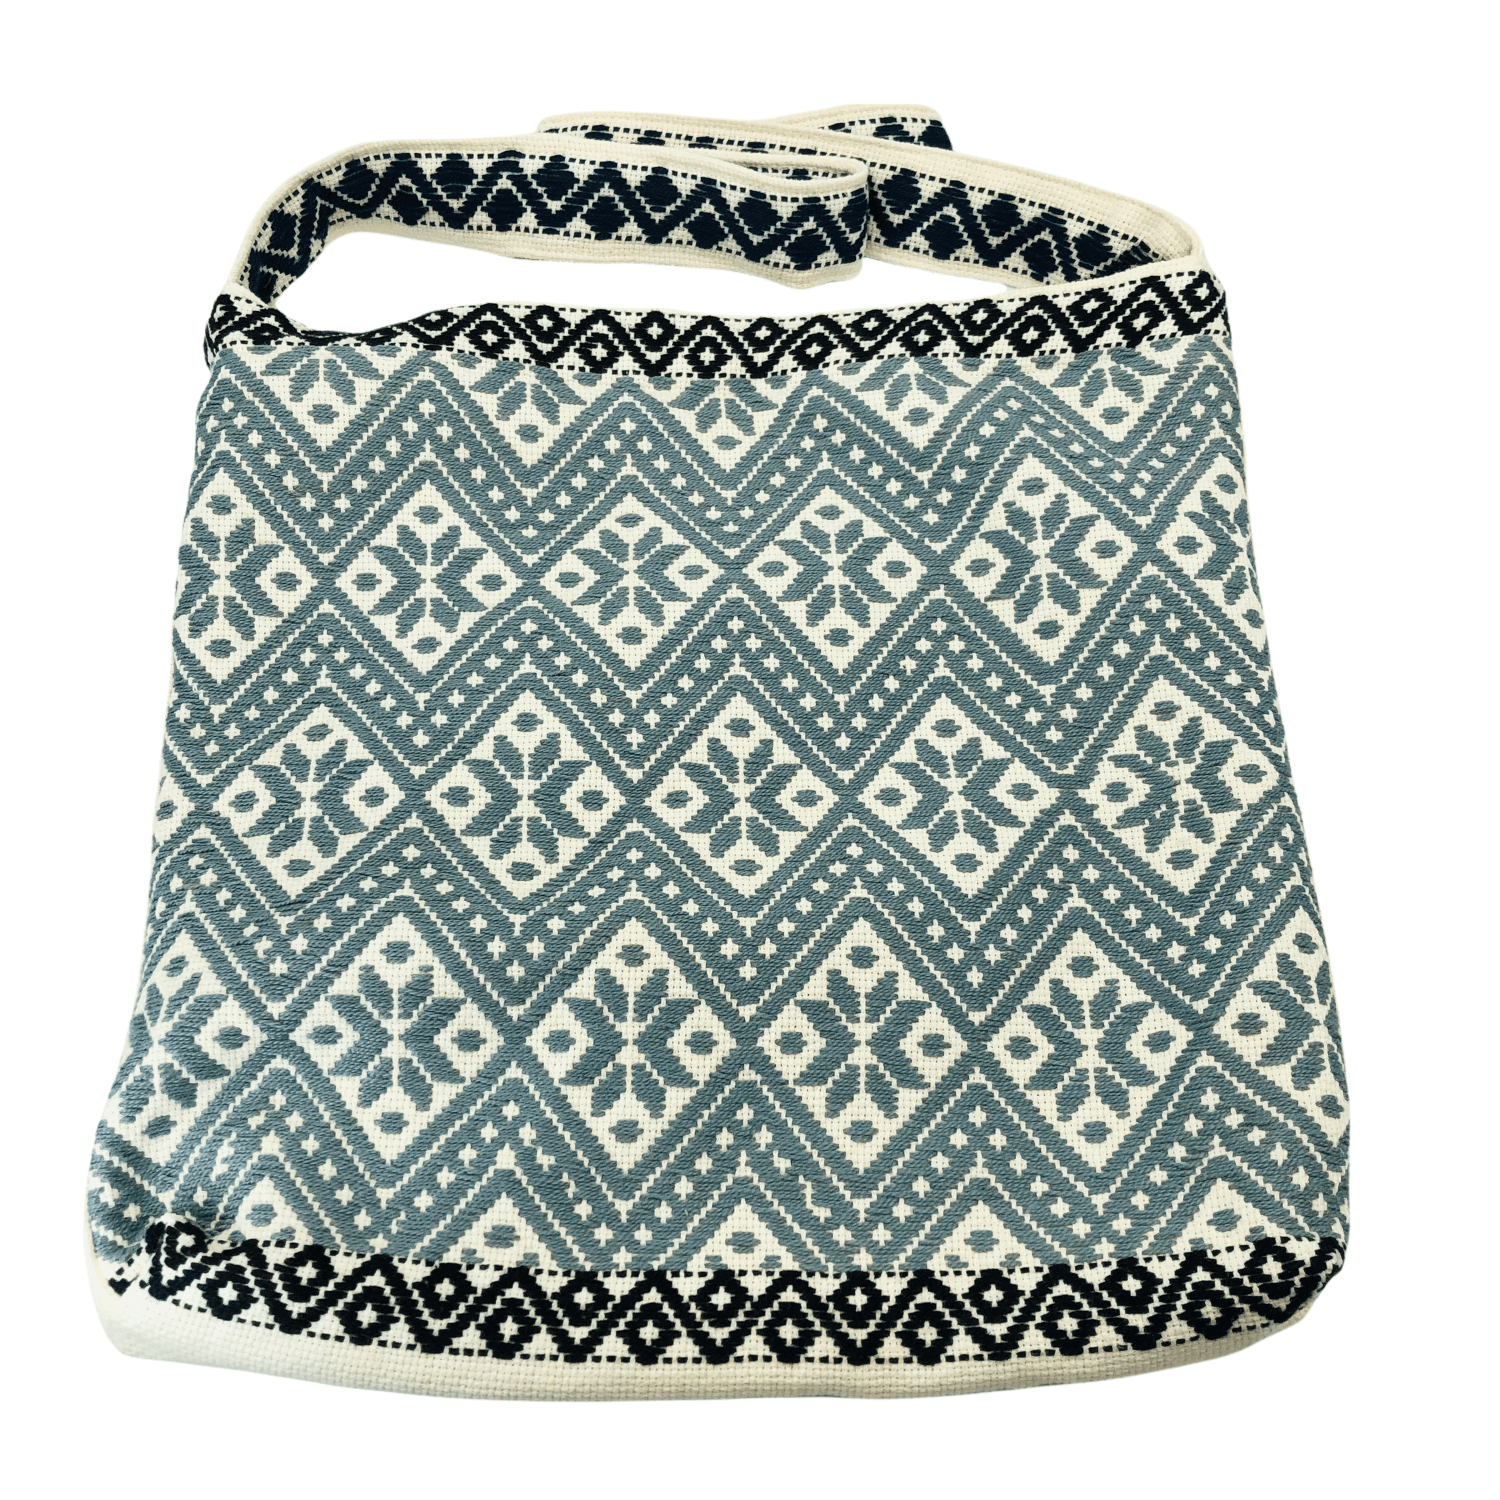 Embroidered Handbag Gray